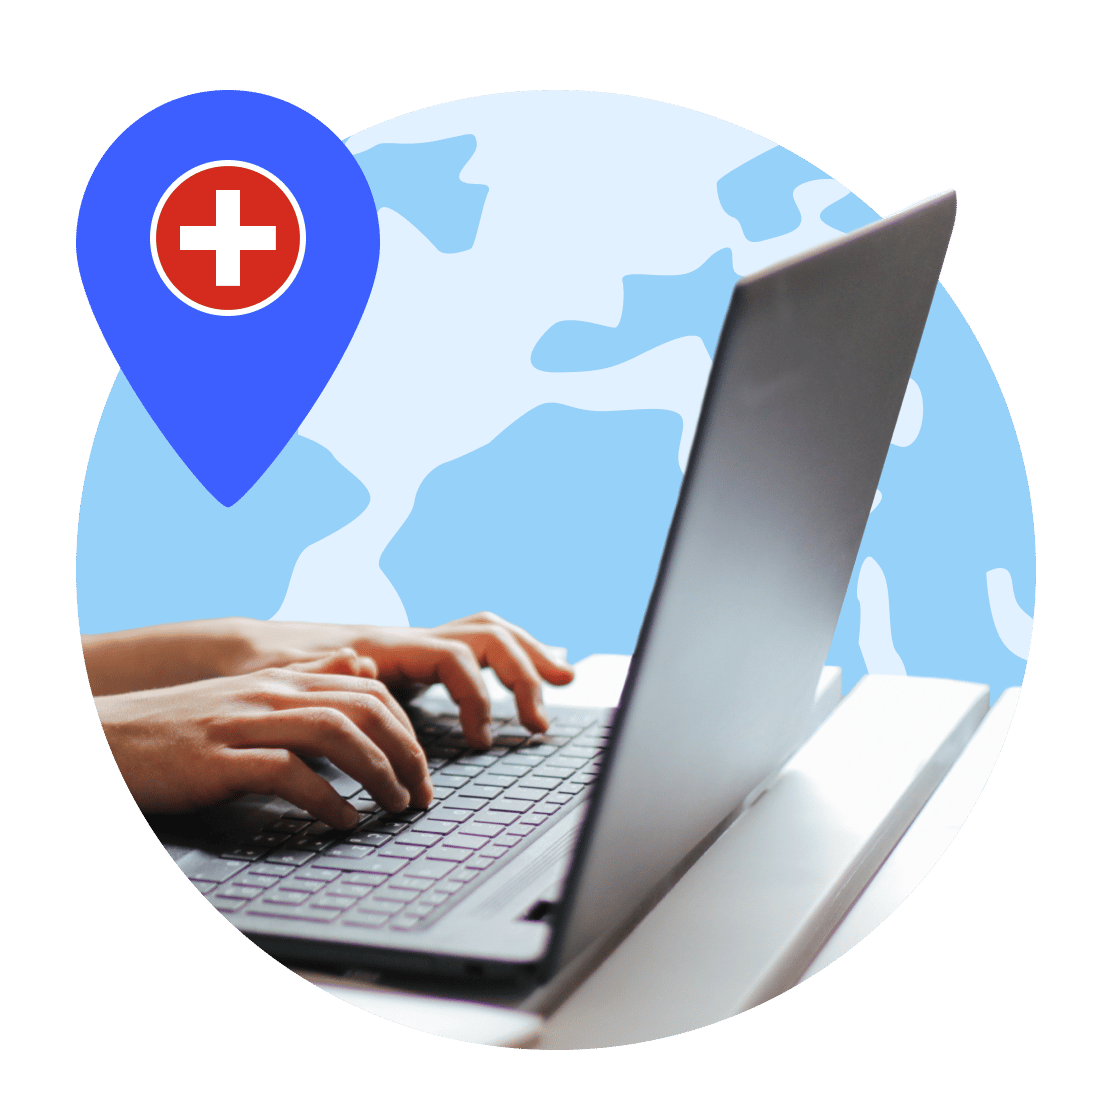 Conéctate a servidores VPN suizos y navega de forma segura.